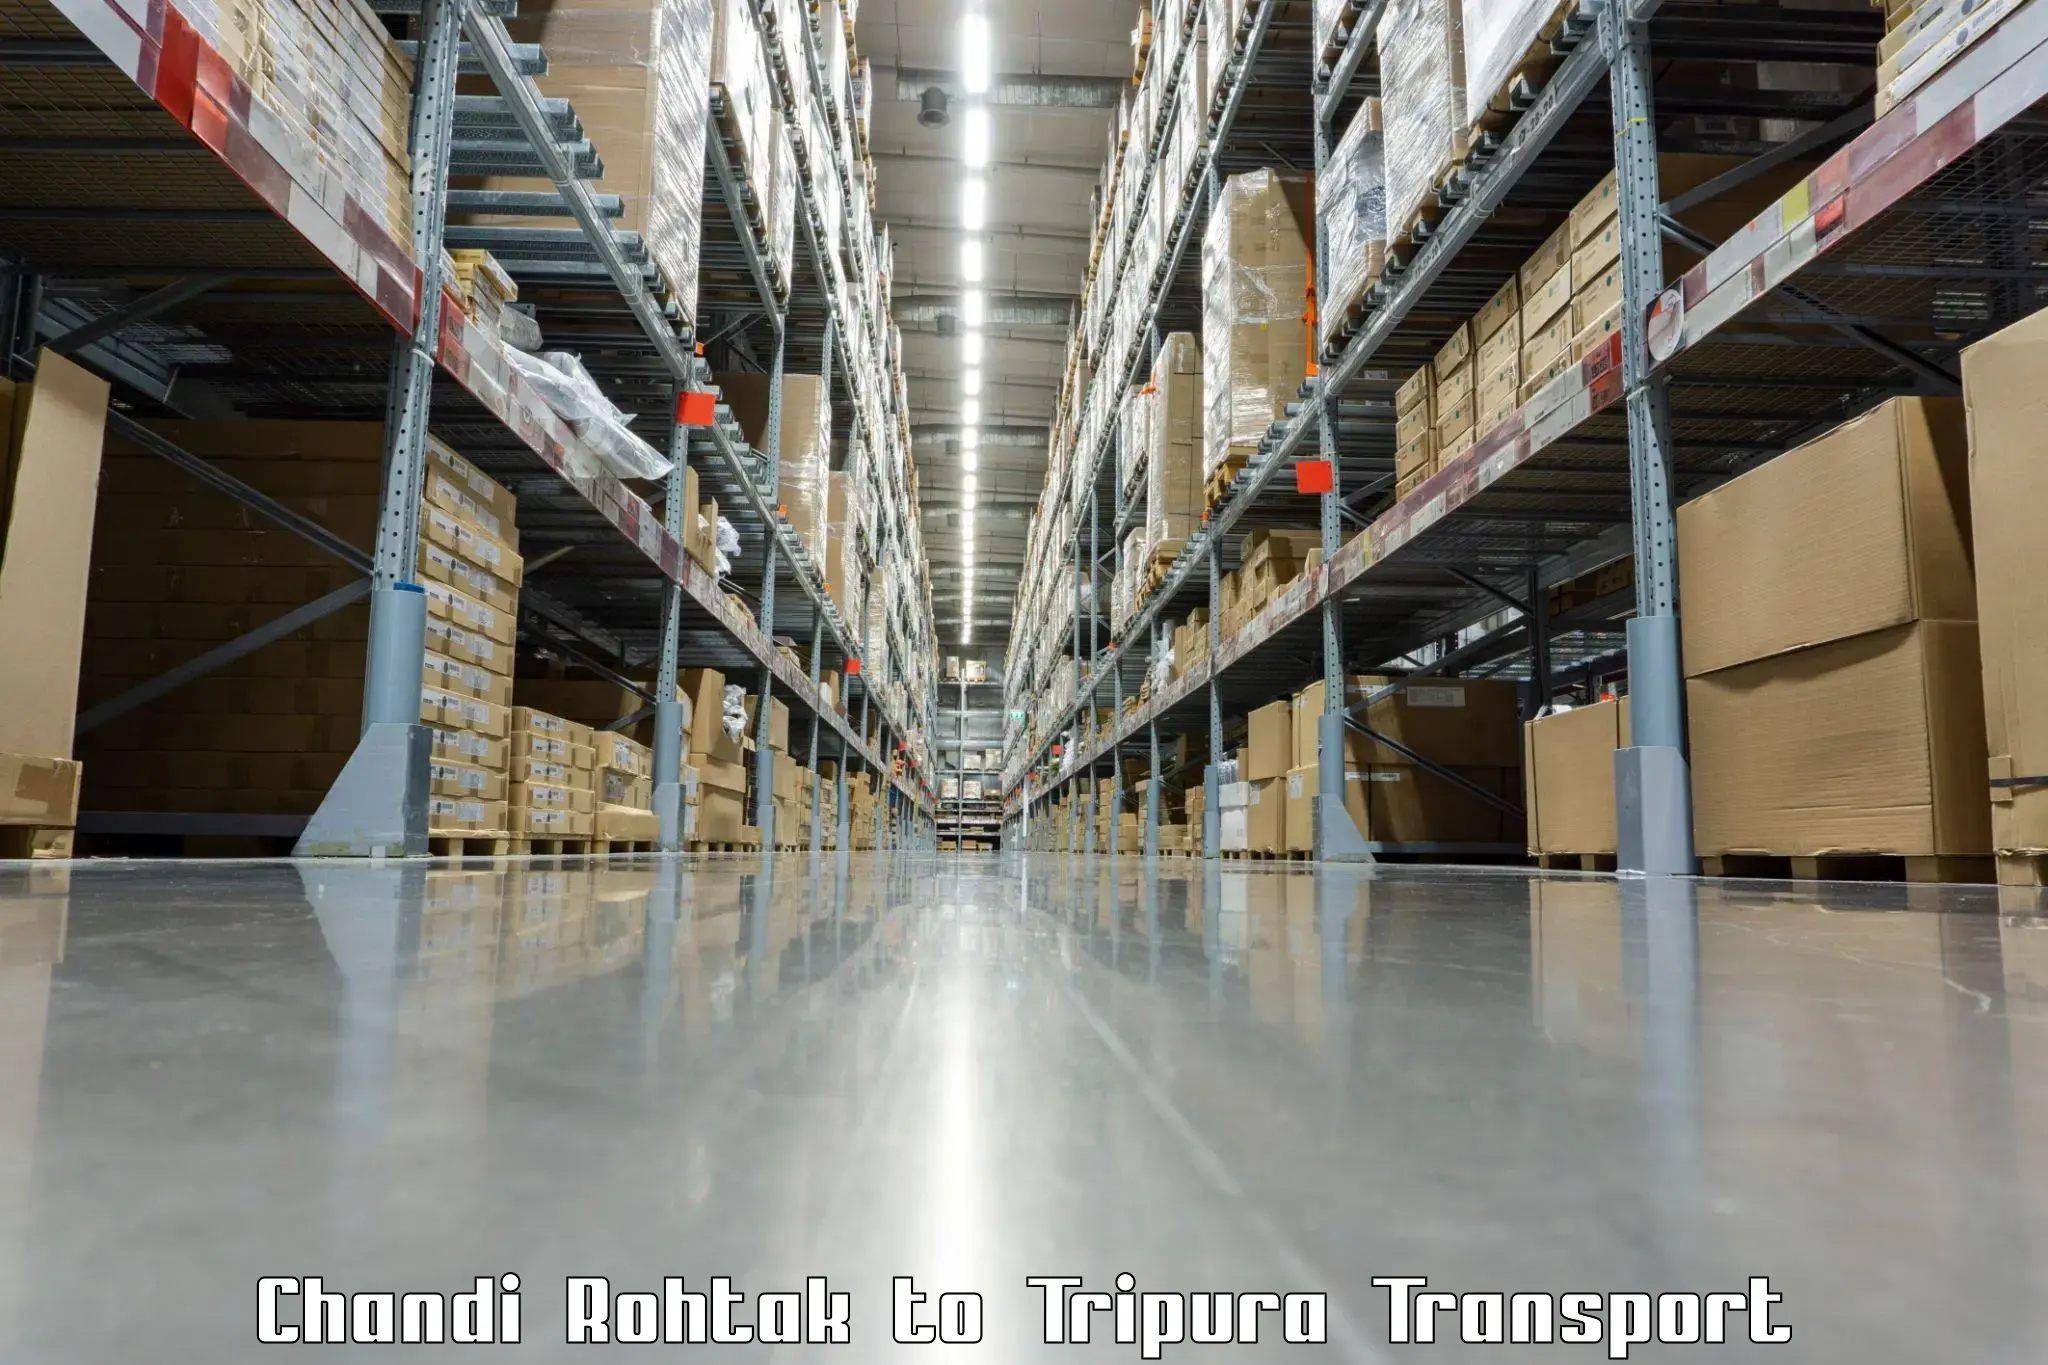 Truck transport companies in India Chandi Rohtak to Radhakishorepur